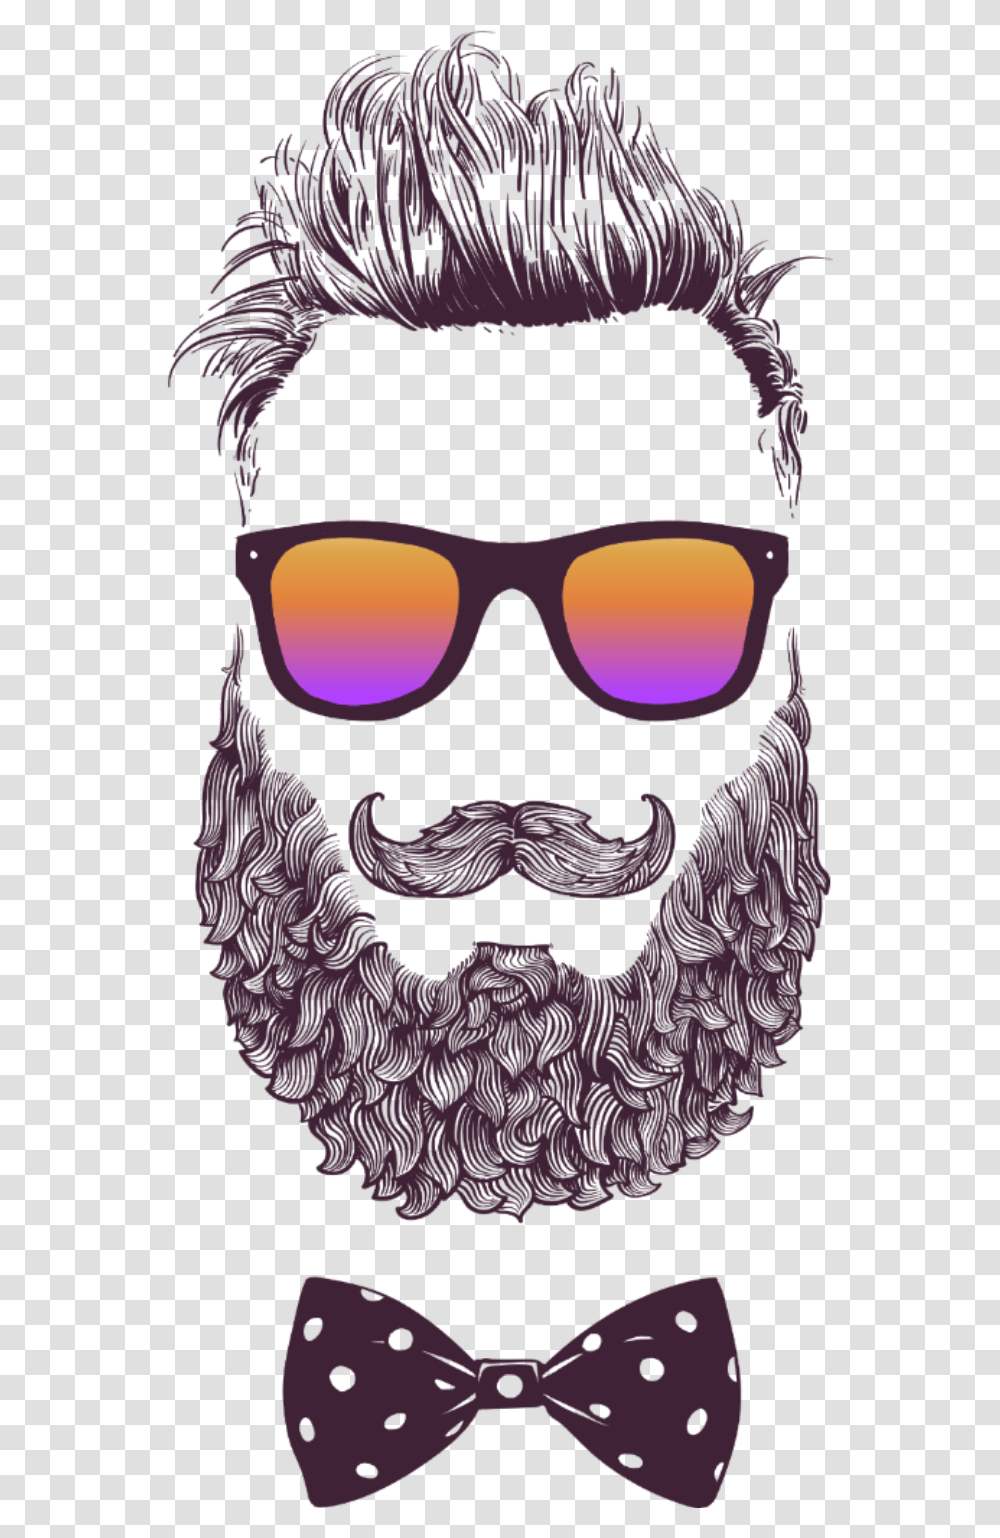 Beard Hipster Man Silhouette Sakal Erkek Adam Illustration, Sunglasses, Accessories, Accessory, Face Transparent Png